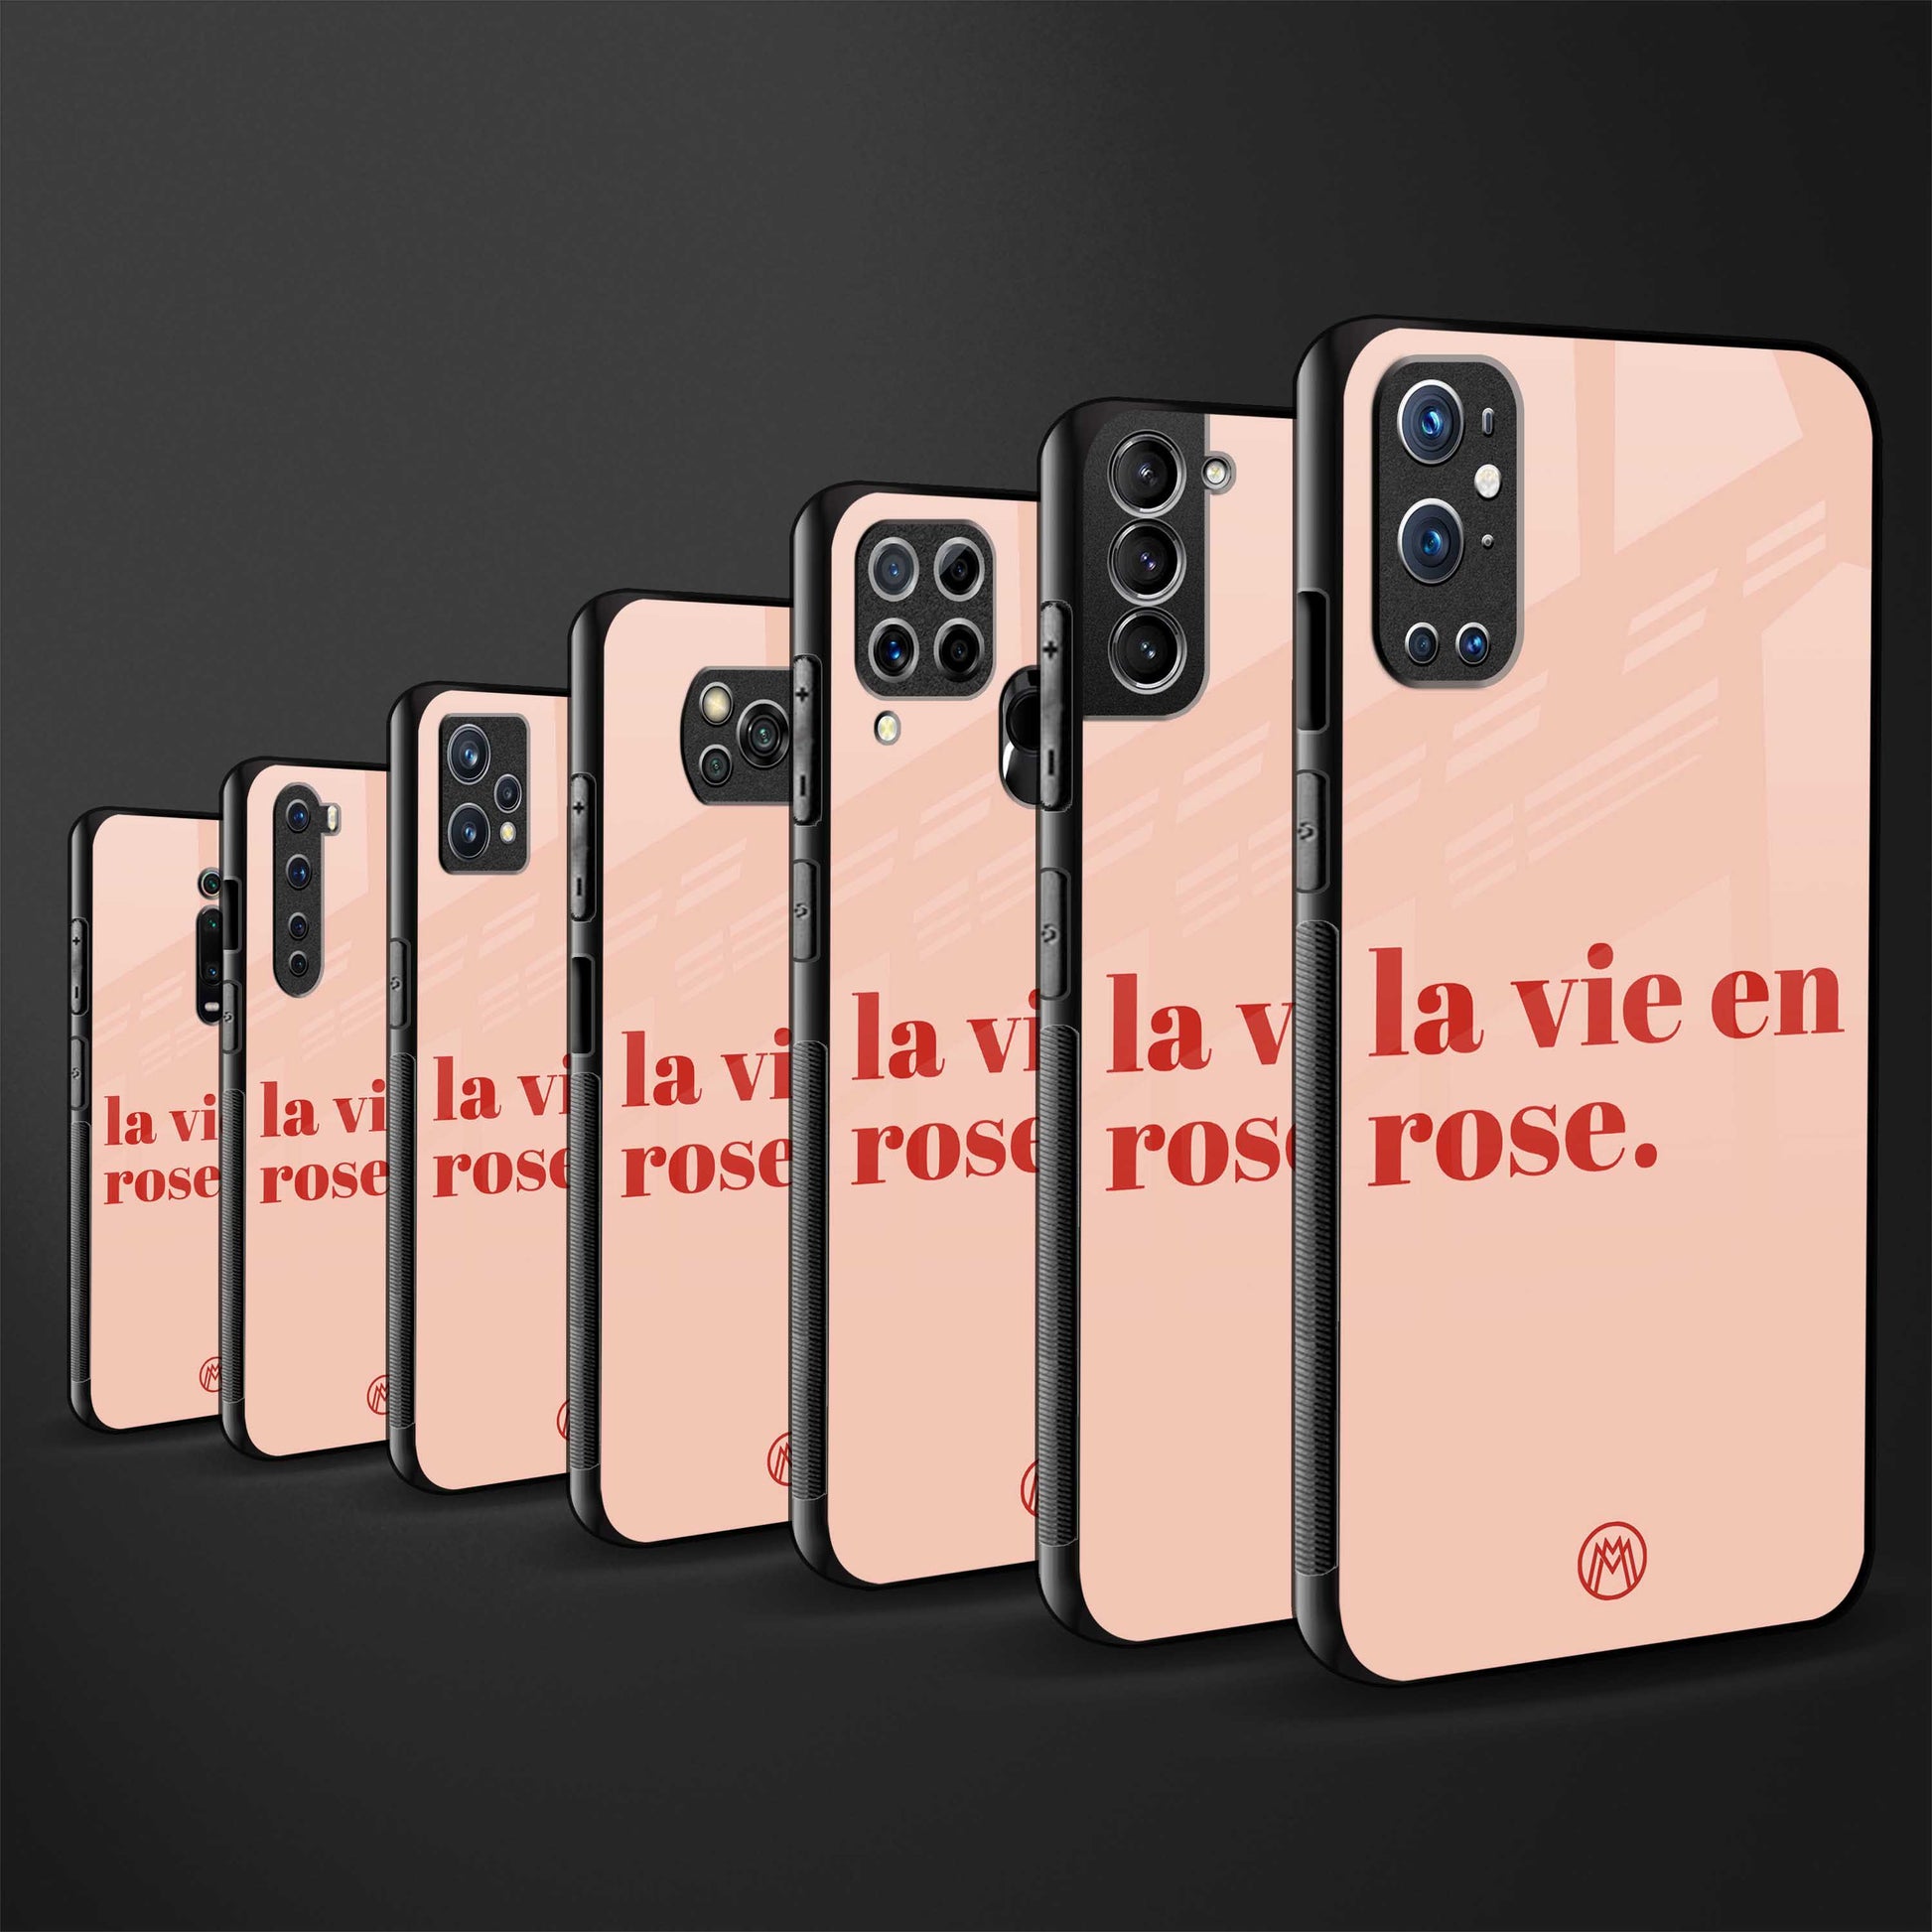 la vie en rose quote glass case for iphone 12 mini image-3